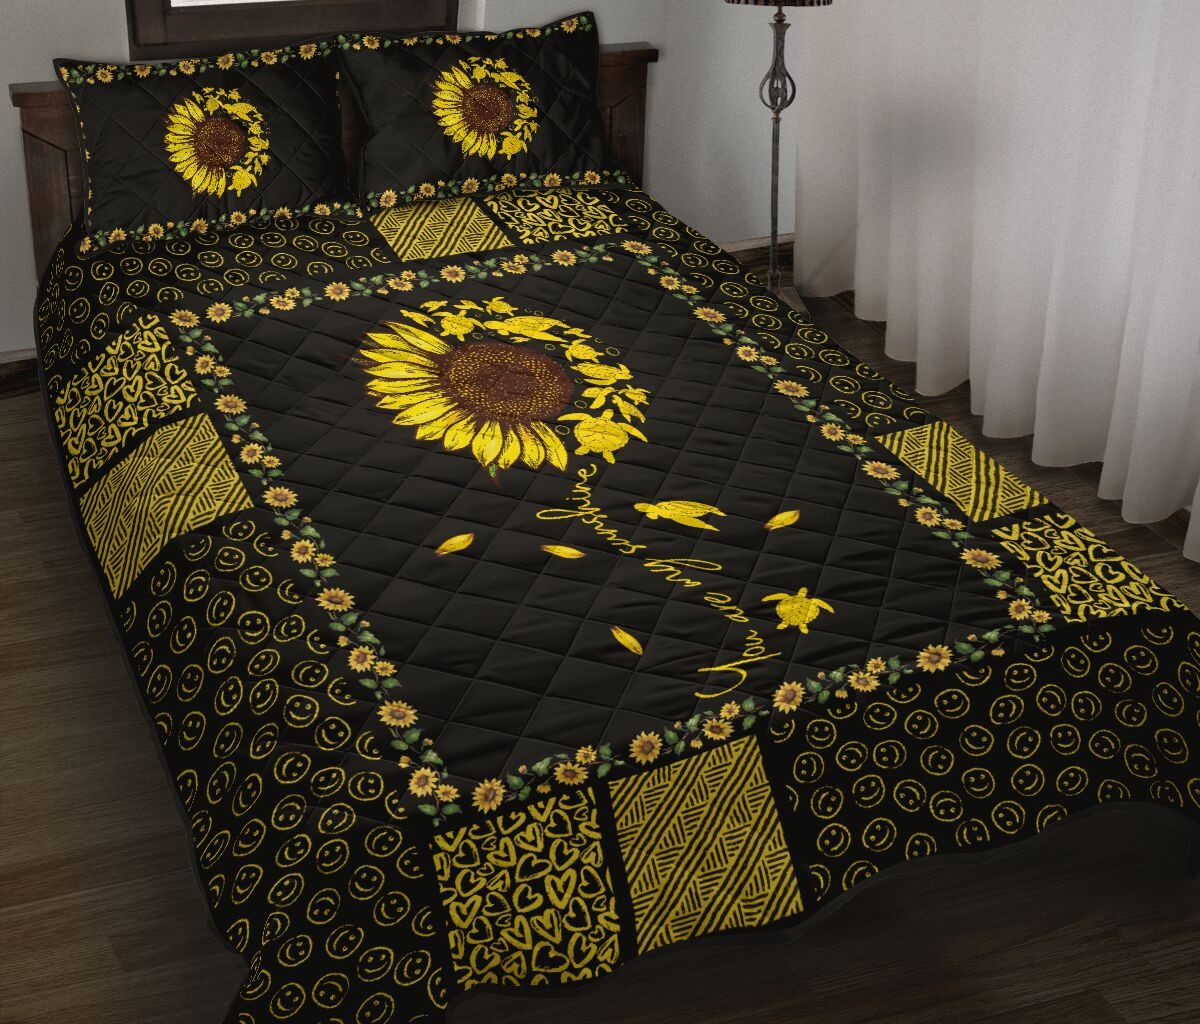 Sunflower sunshine turtle quilt bedding set